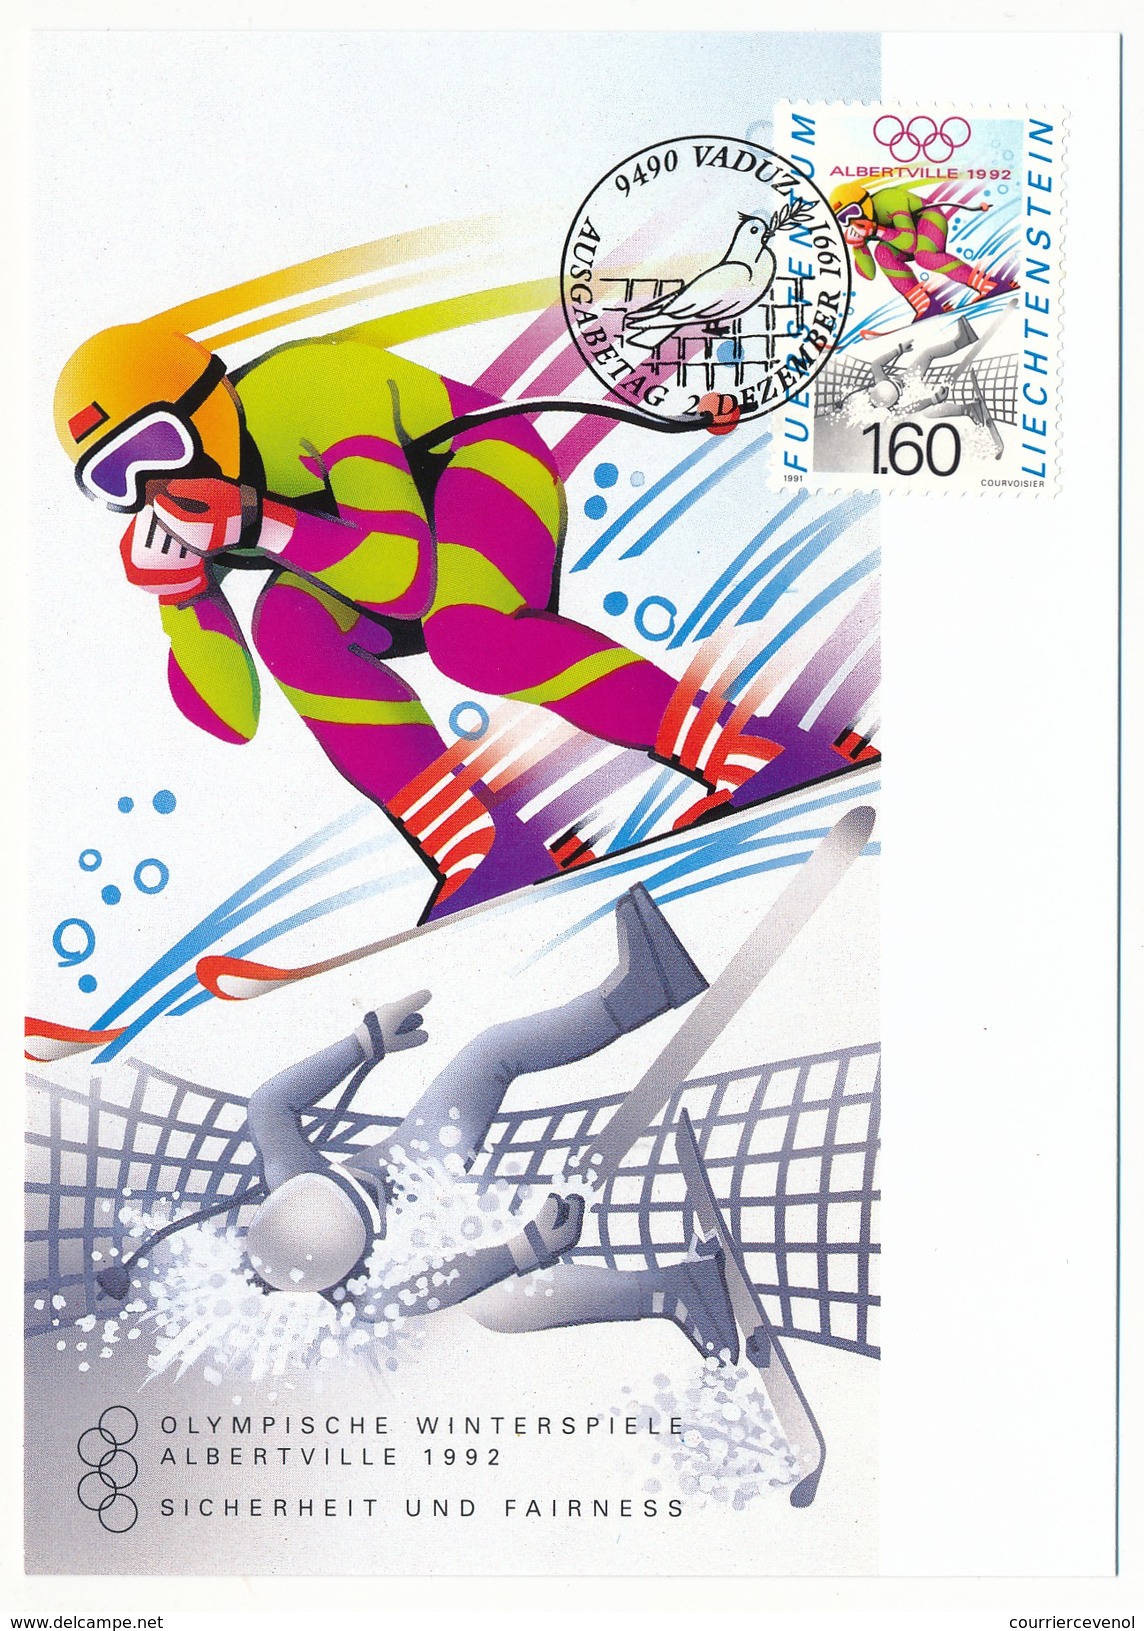 LIECHTENSTEIN - 6 enveloppes + 6 cartes thème Sports (dont Jeux olympiques)